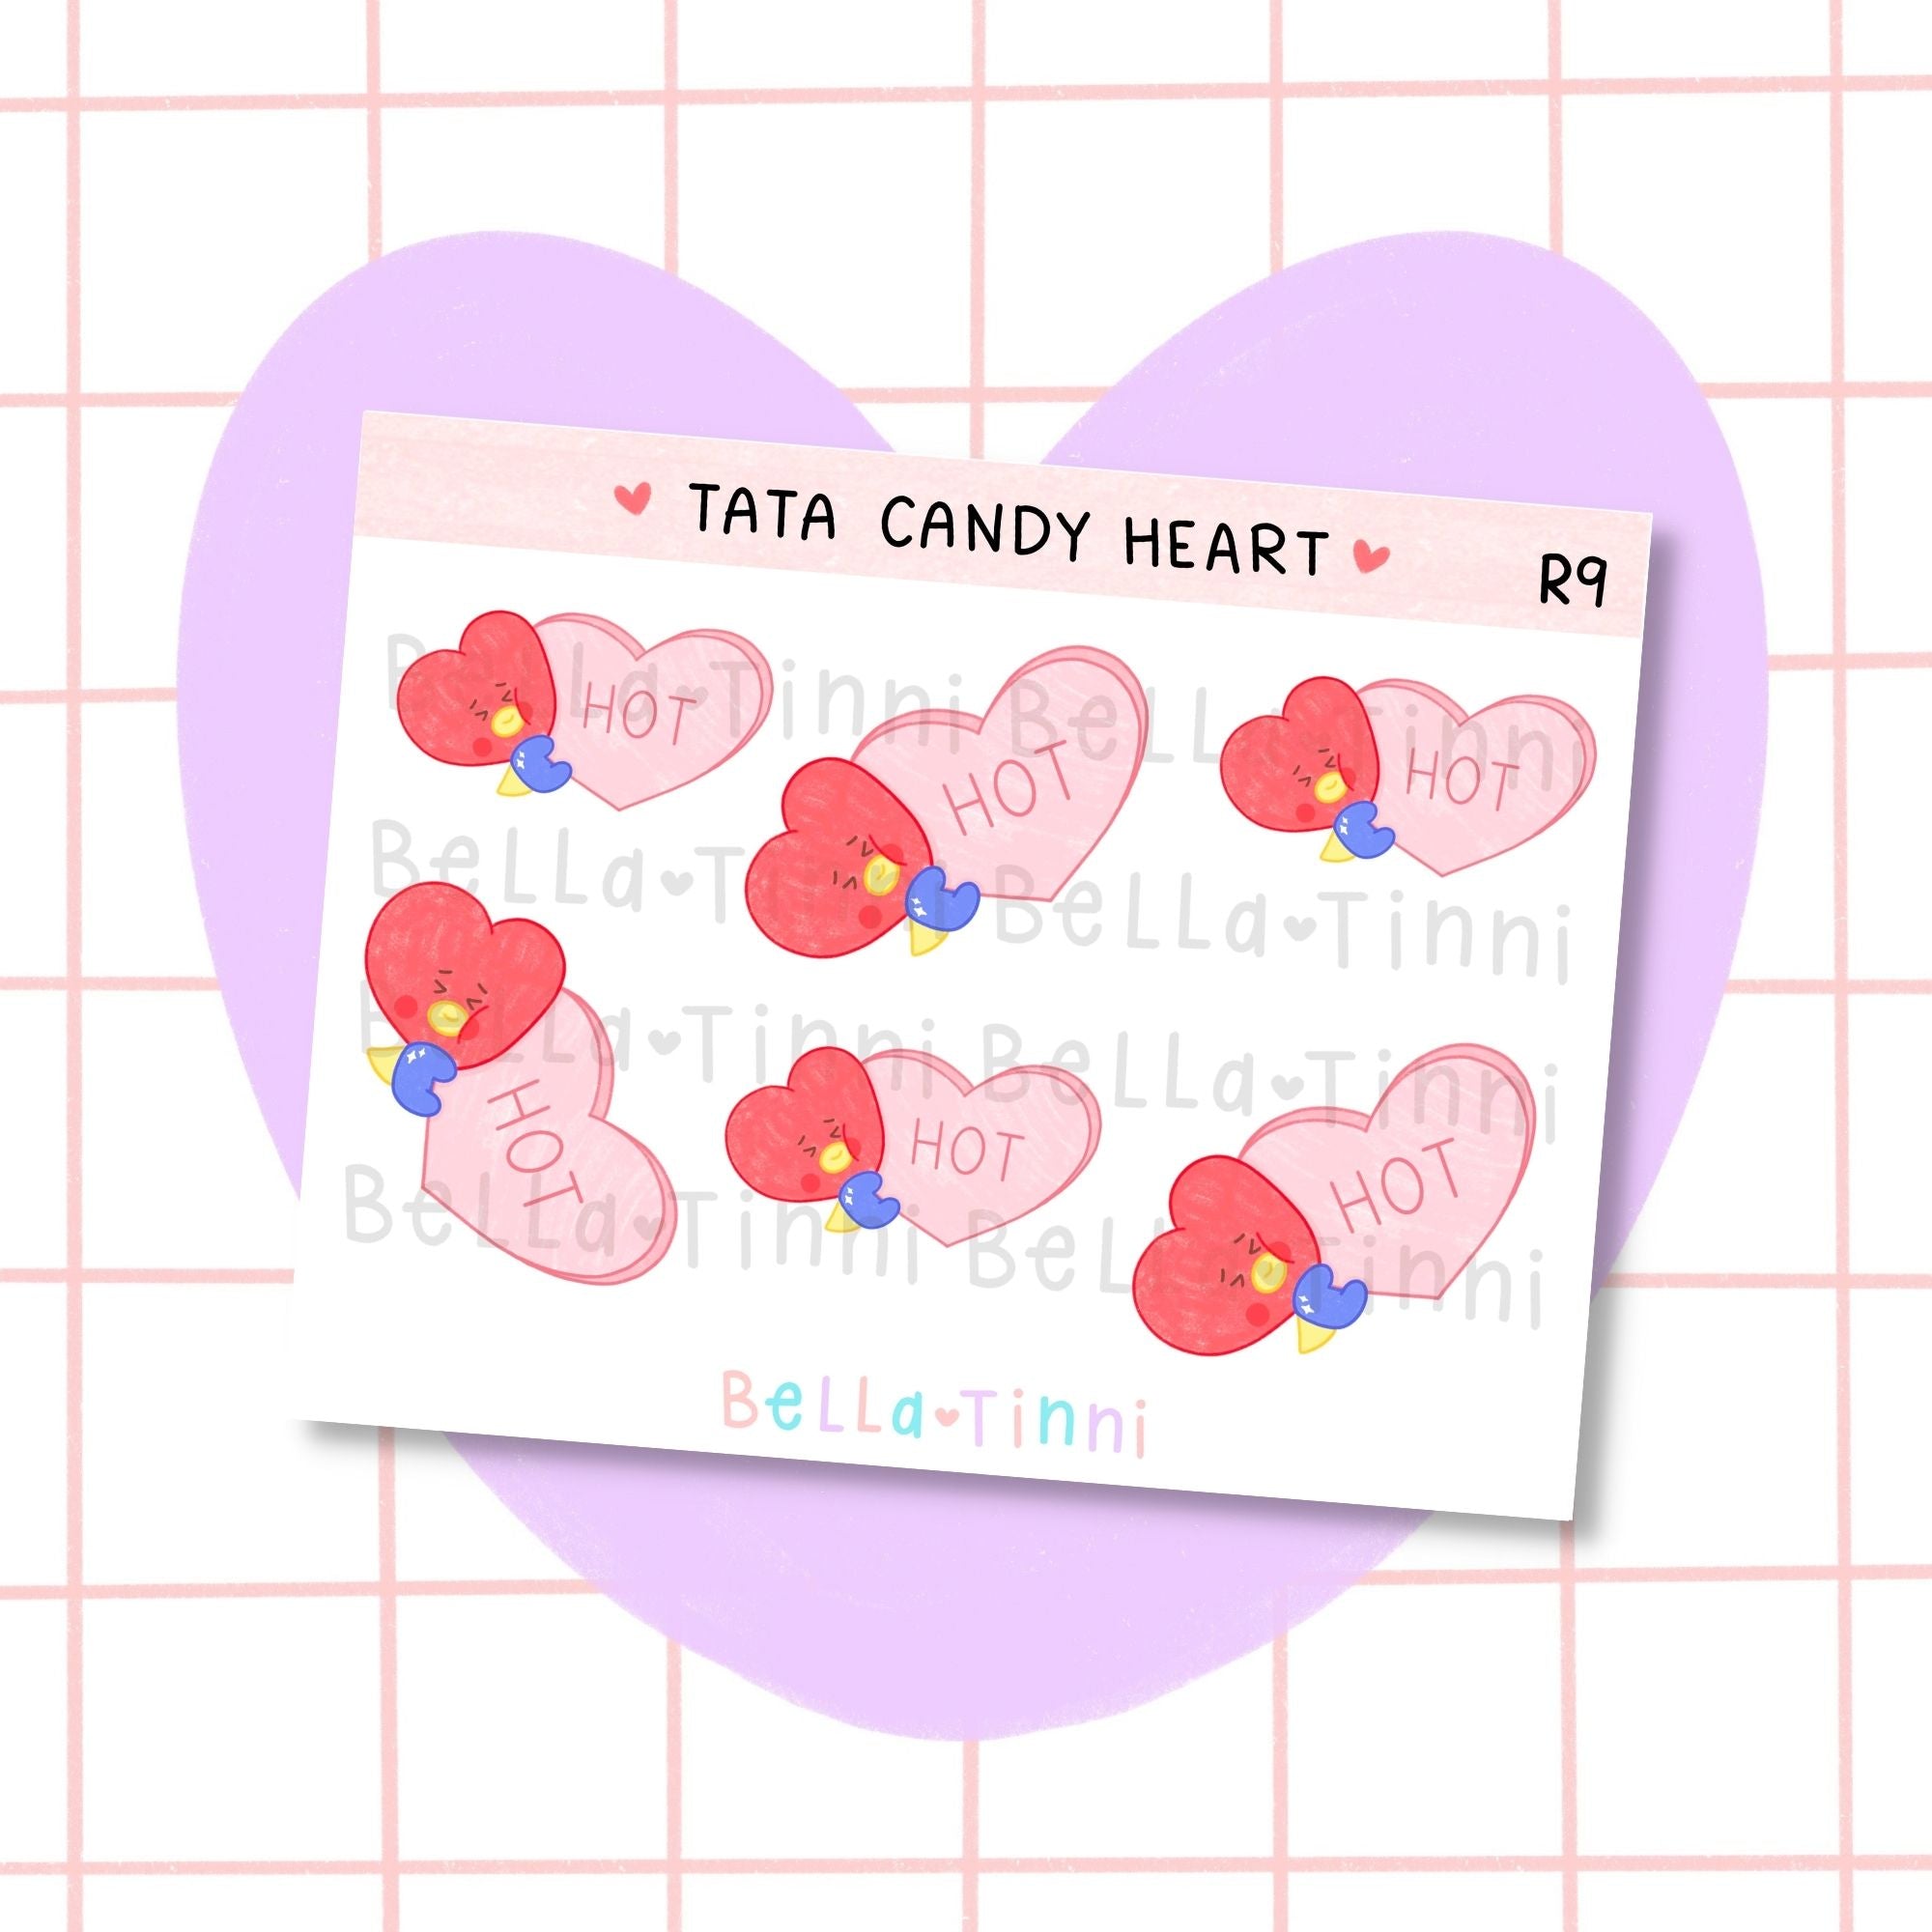 Tata Candy Heart - R9